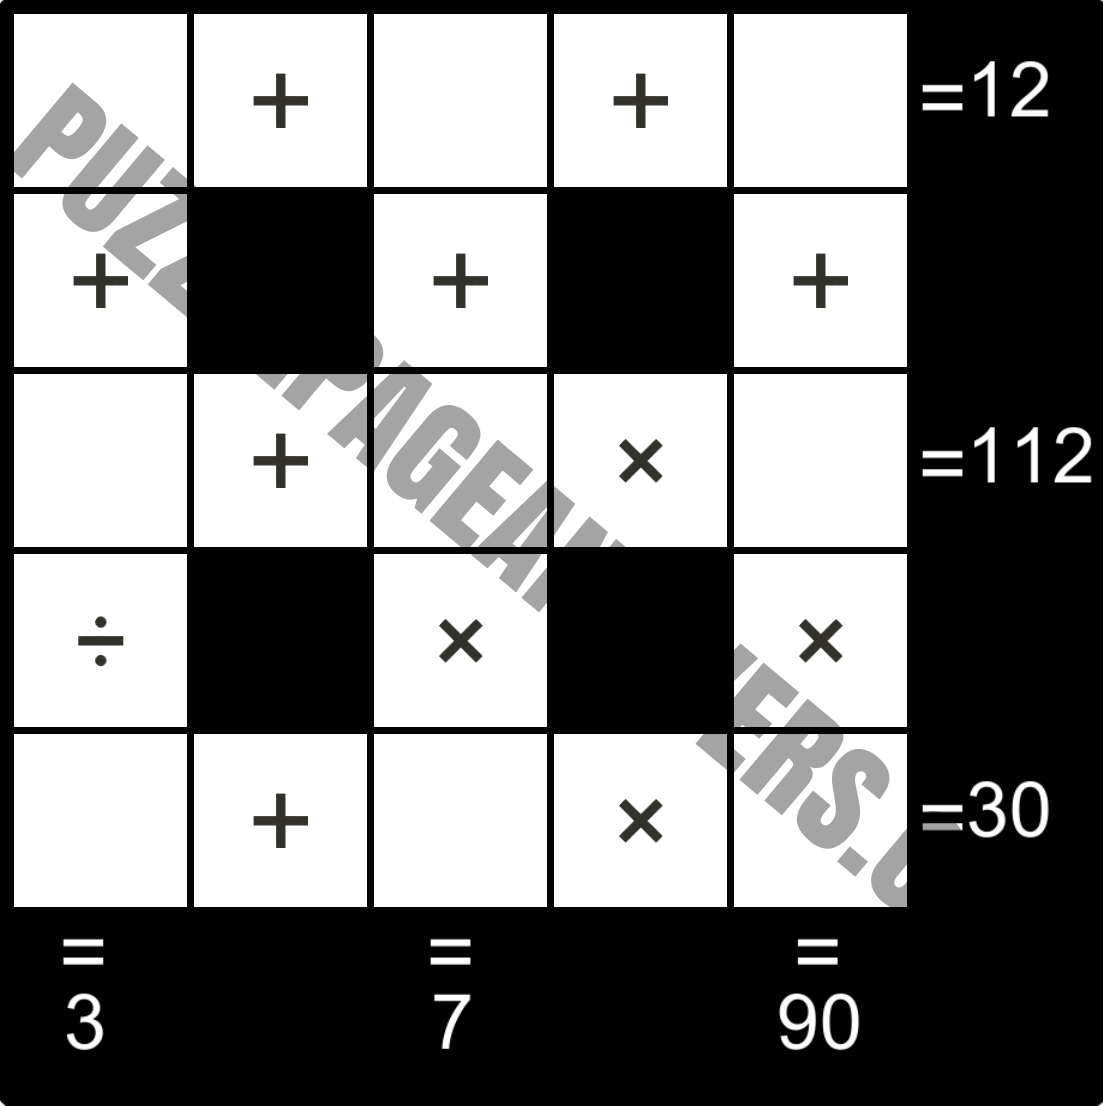 Puzzle Page Cross Sum April 24 2020 PuzzlePageAnswers com